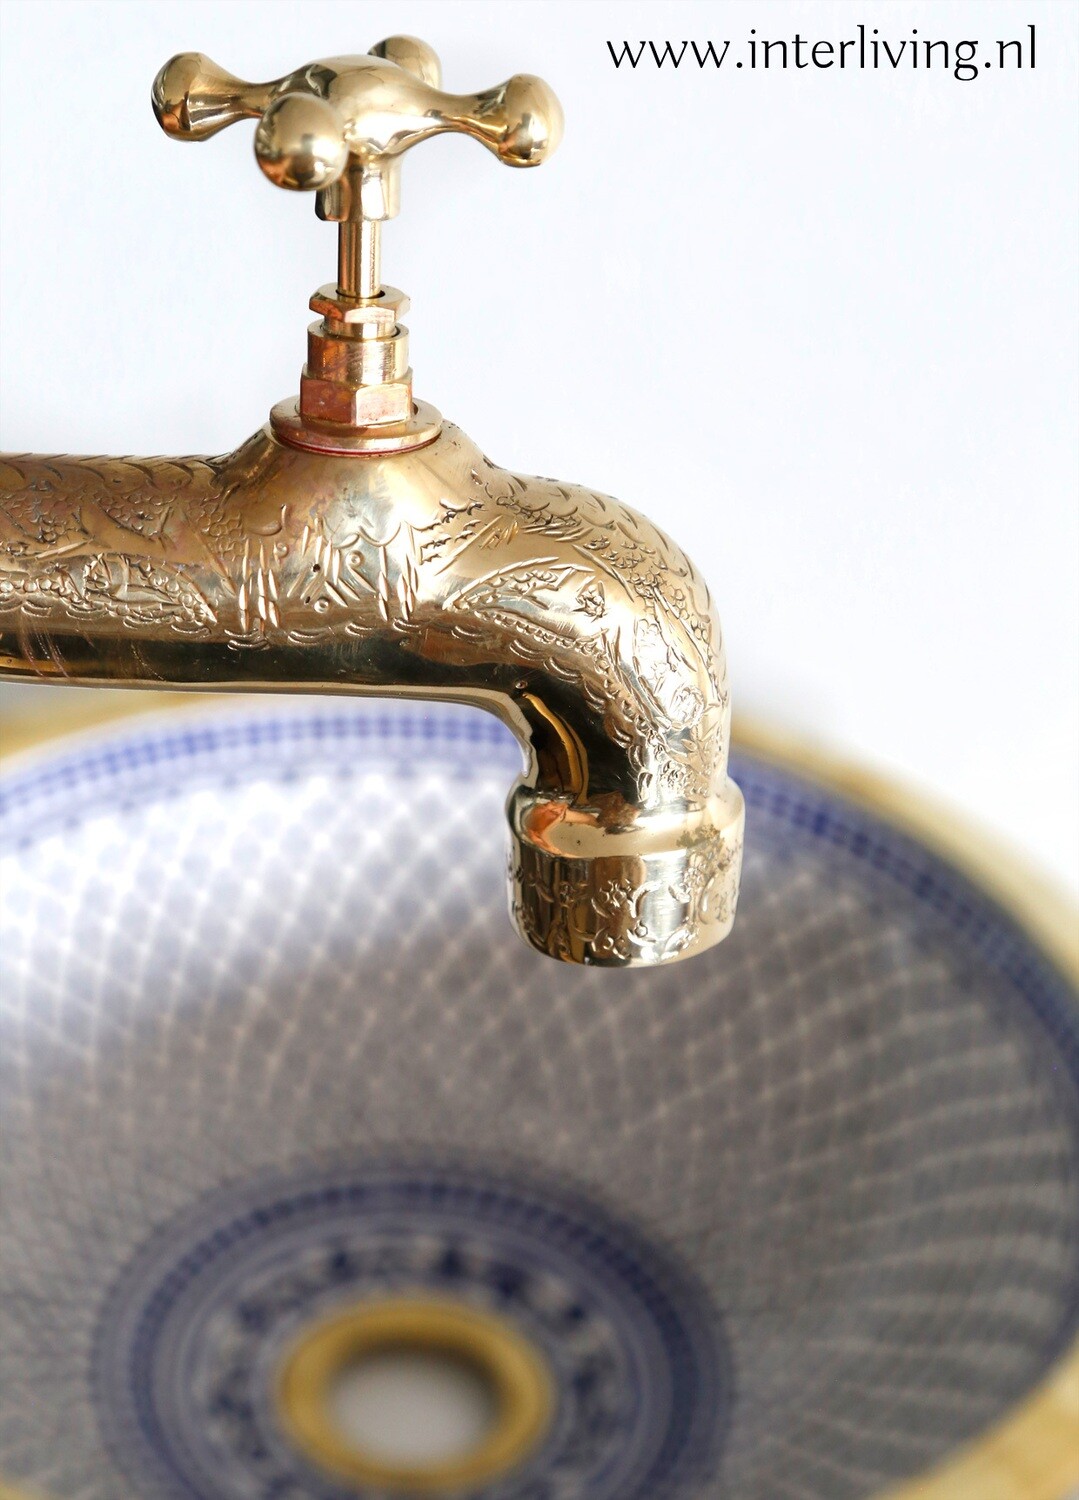 veer Rubriek Wonderbaarlijk vintage fonteinkraan van gegraveerd messing voor waskom: luxe koudwater  kraan met nostalgische look in wellness / hamam style